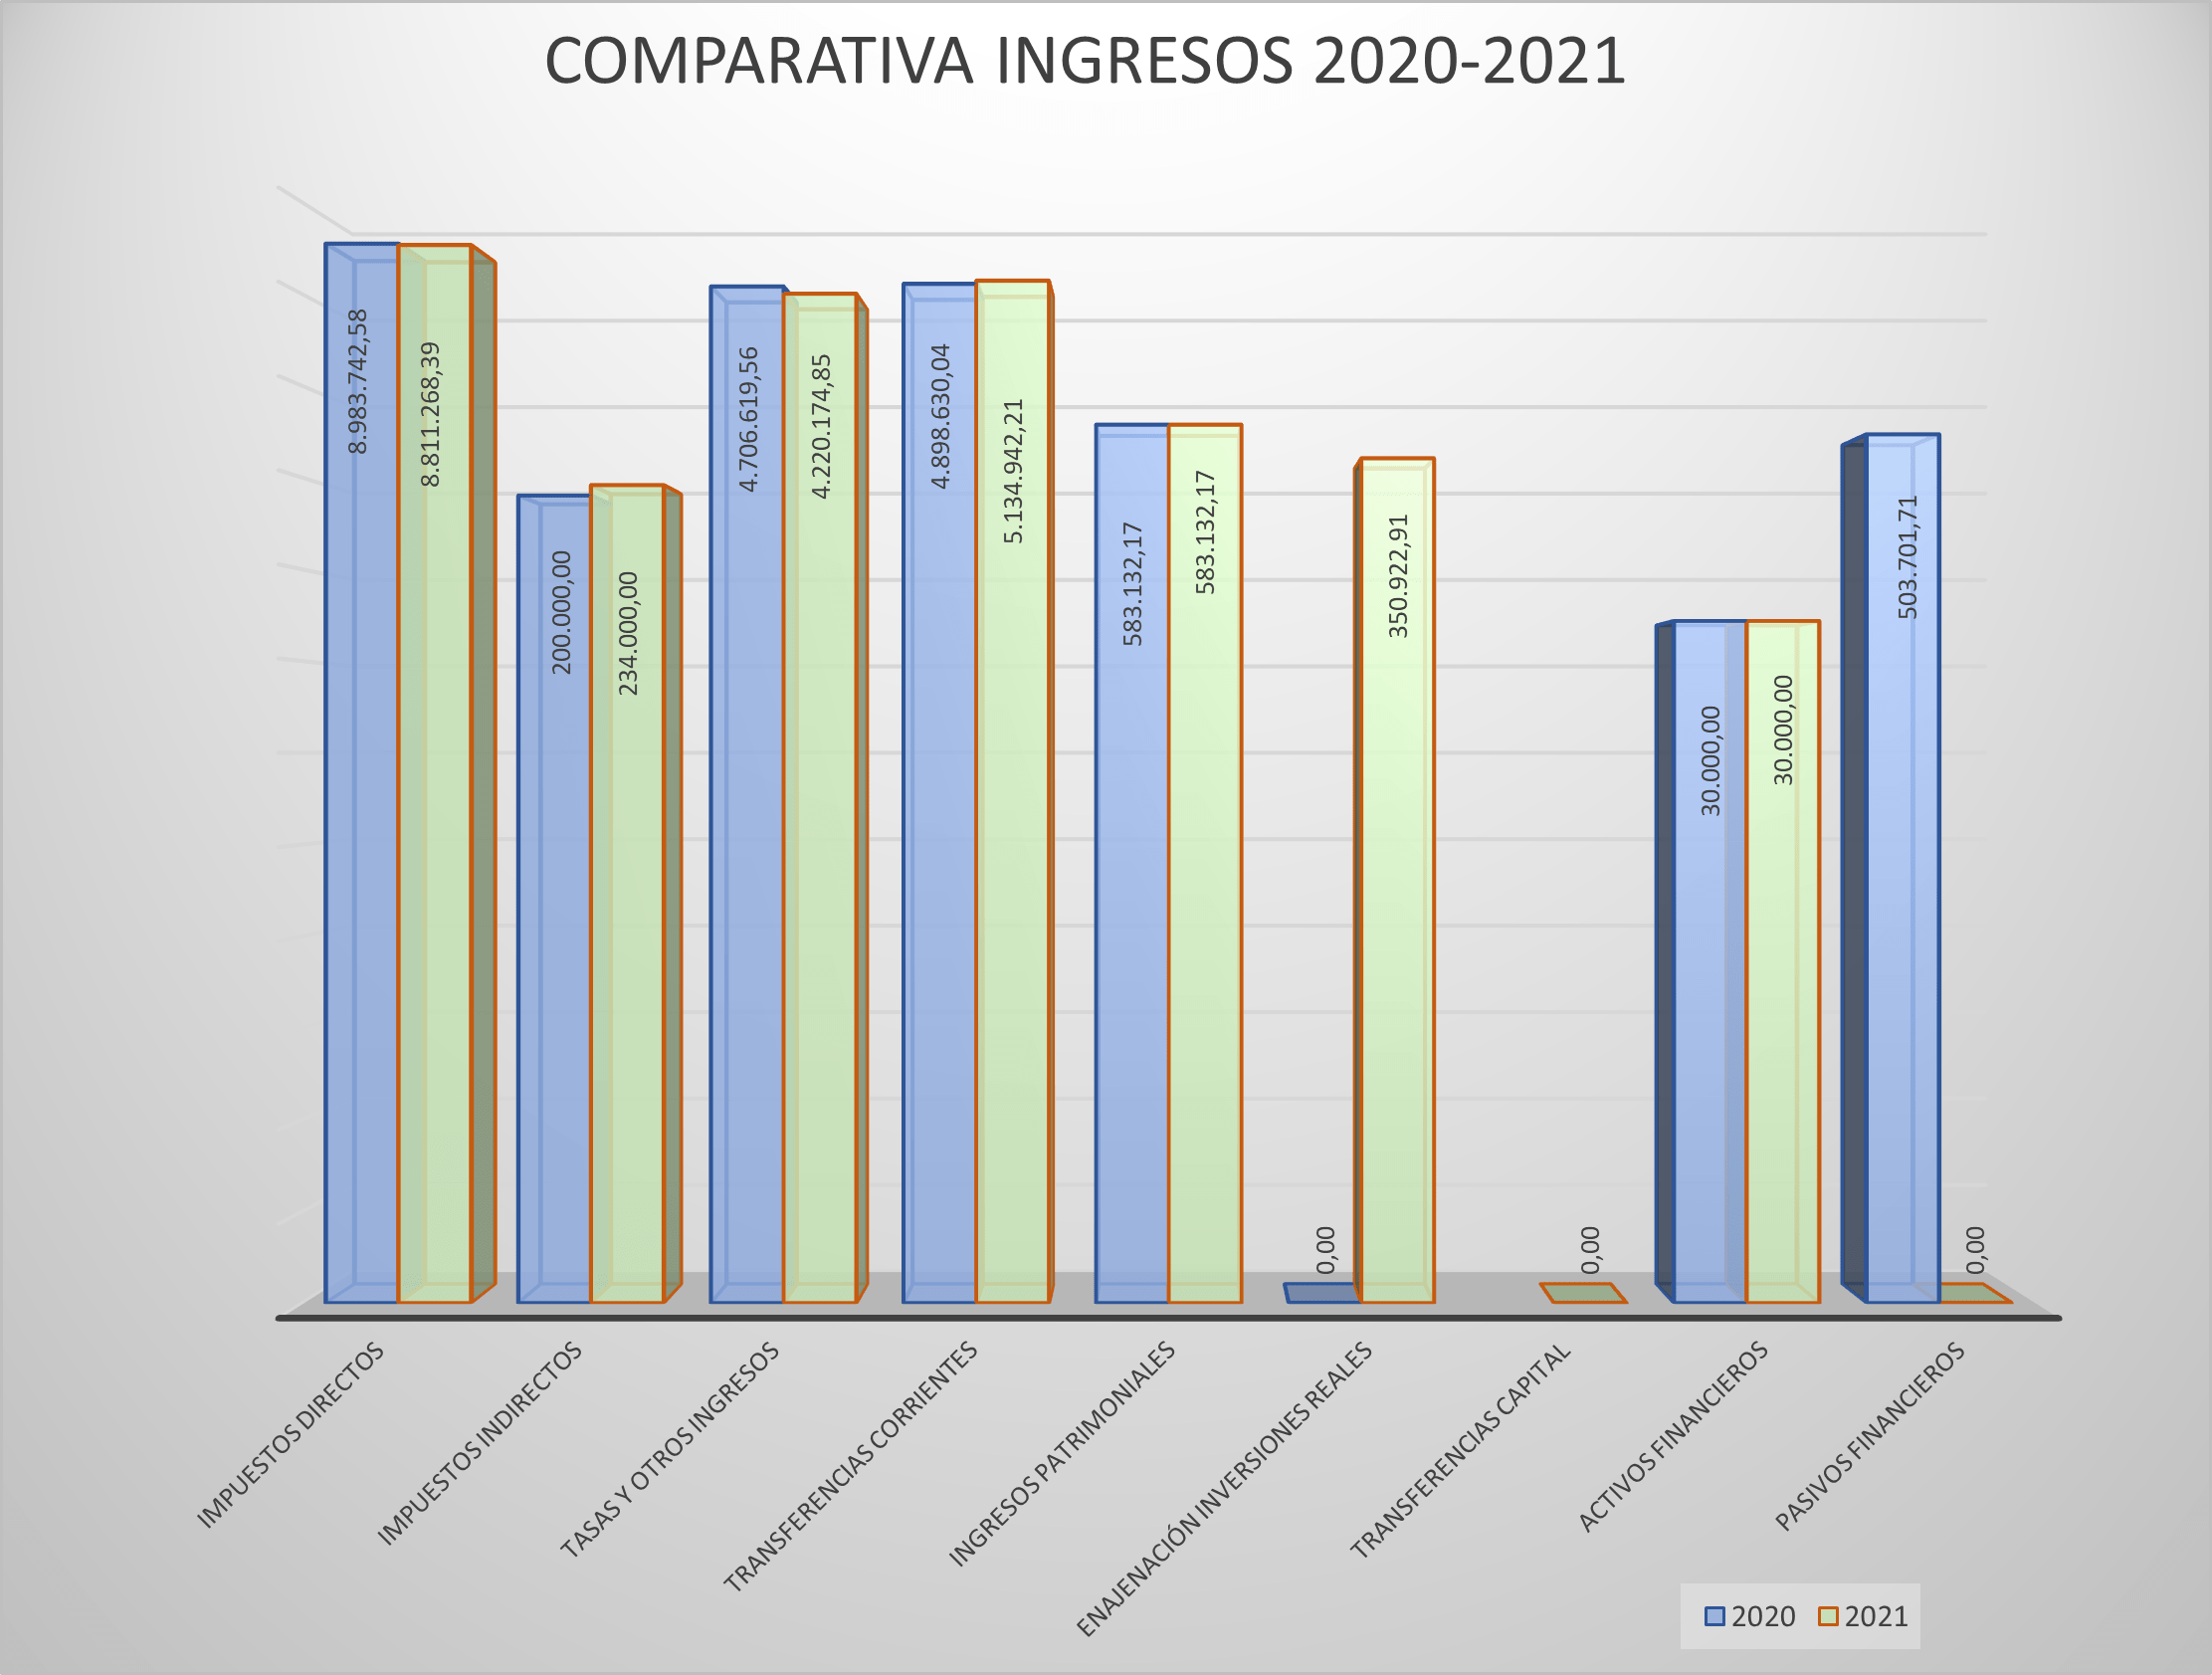 Comparativa ingresos 2020-2021